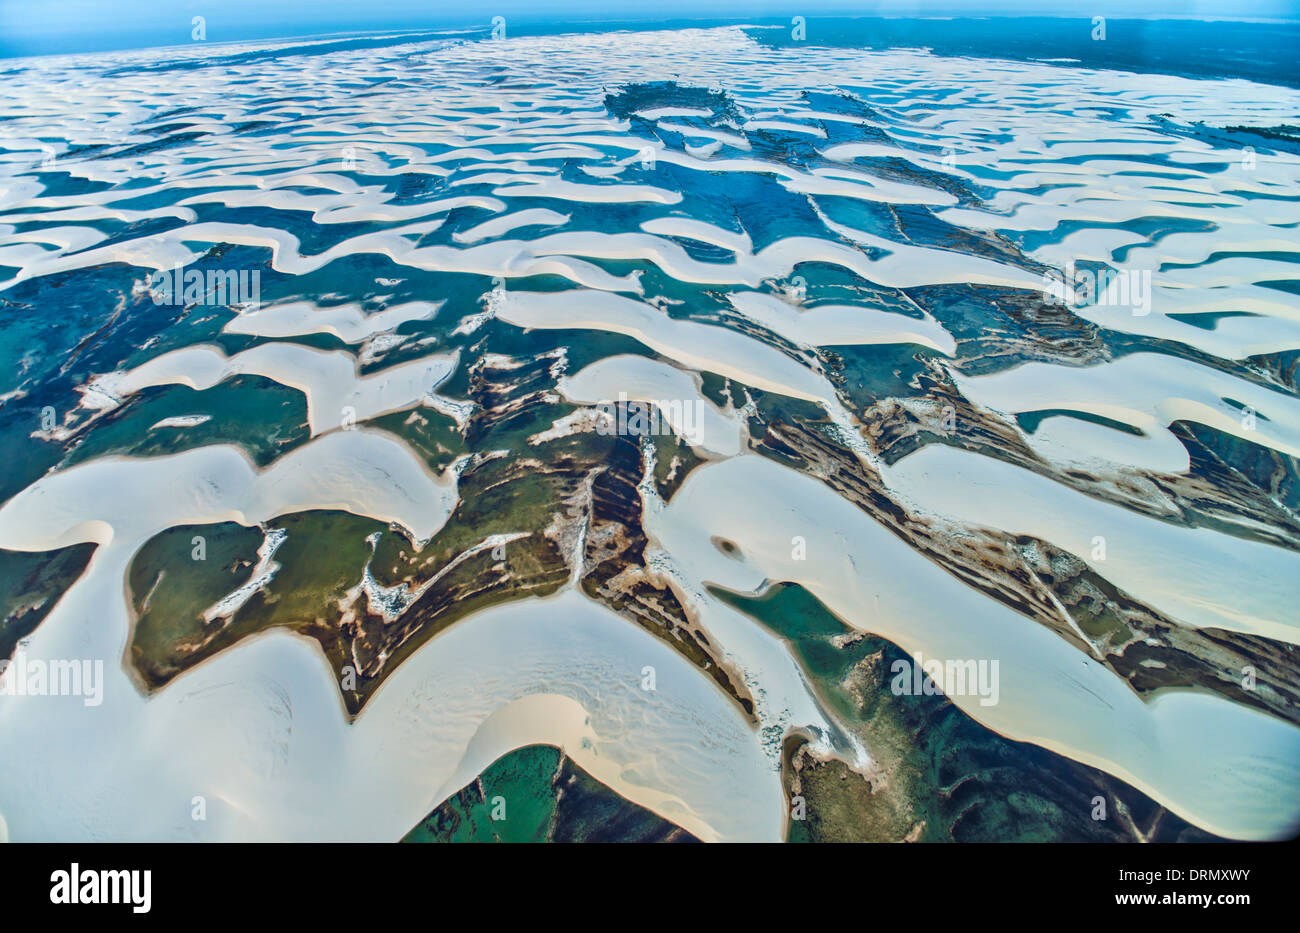 Aerial View of Rainwater ponds trapped in white dunes, Lencois Maranhenses National Park, Brazil, Atlantic Ocean Stock Photo